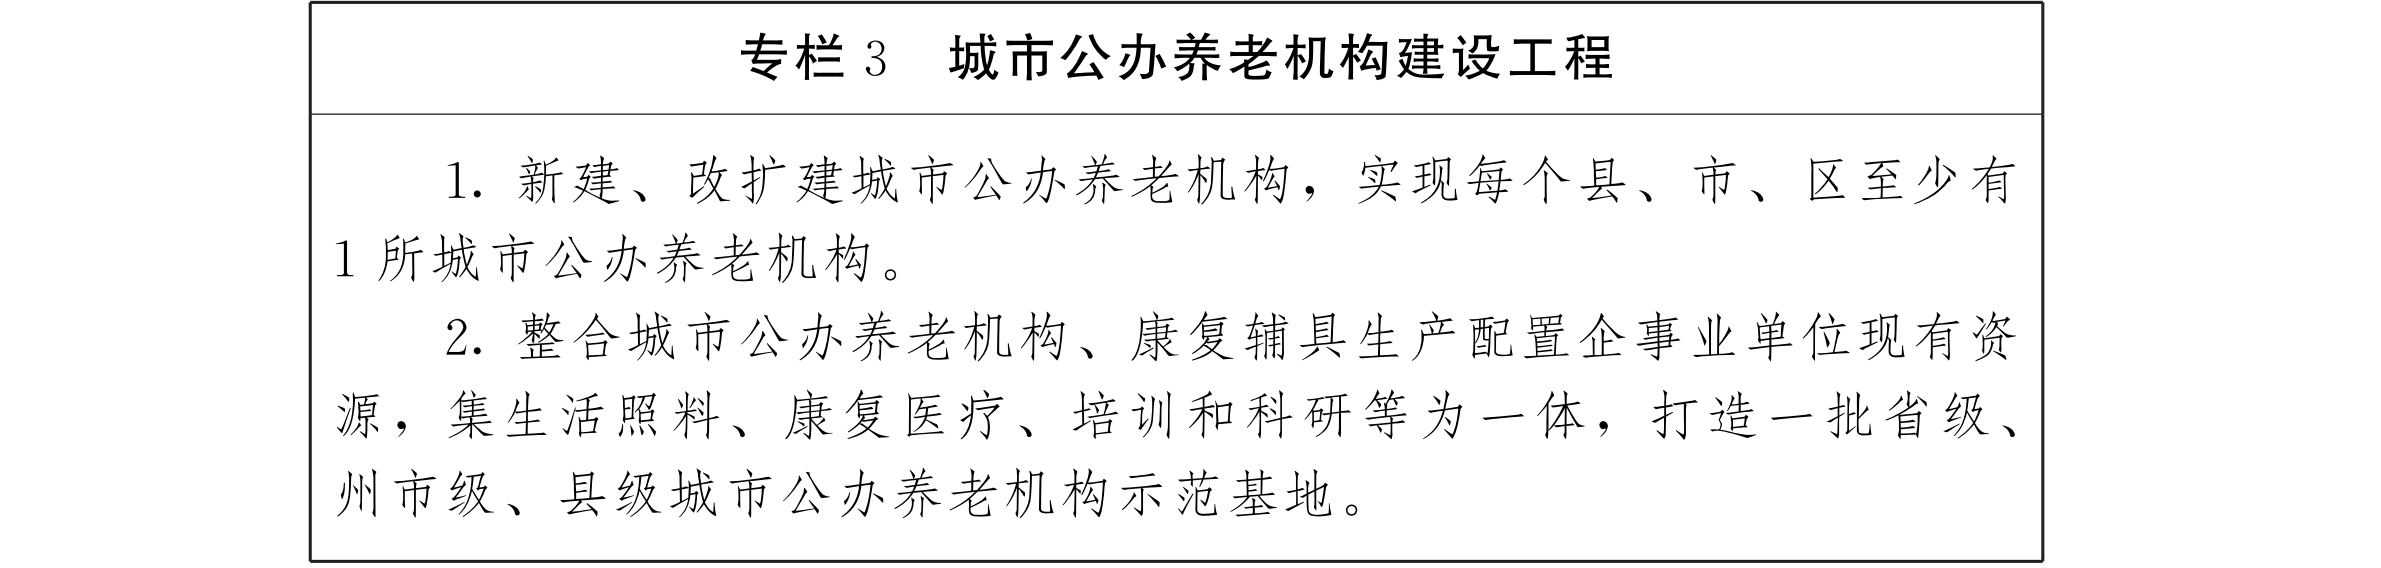 云南省人民政府办公厅关于印发云南省养老服务体系建设“十三五”规划的通知_07.png